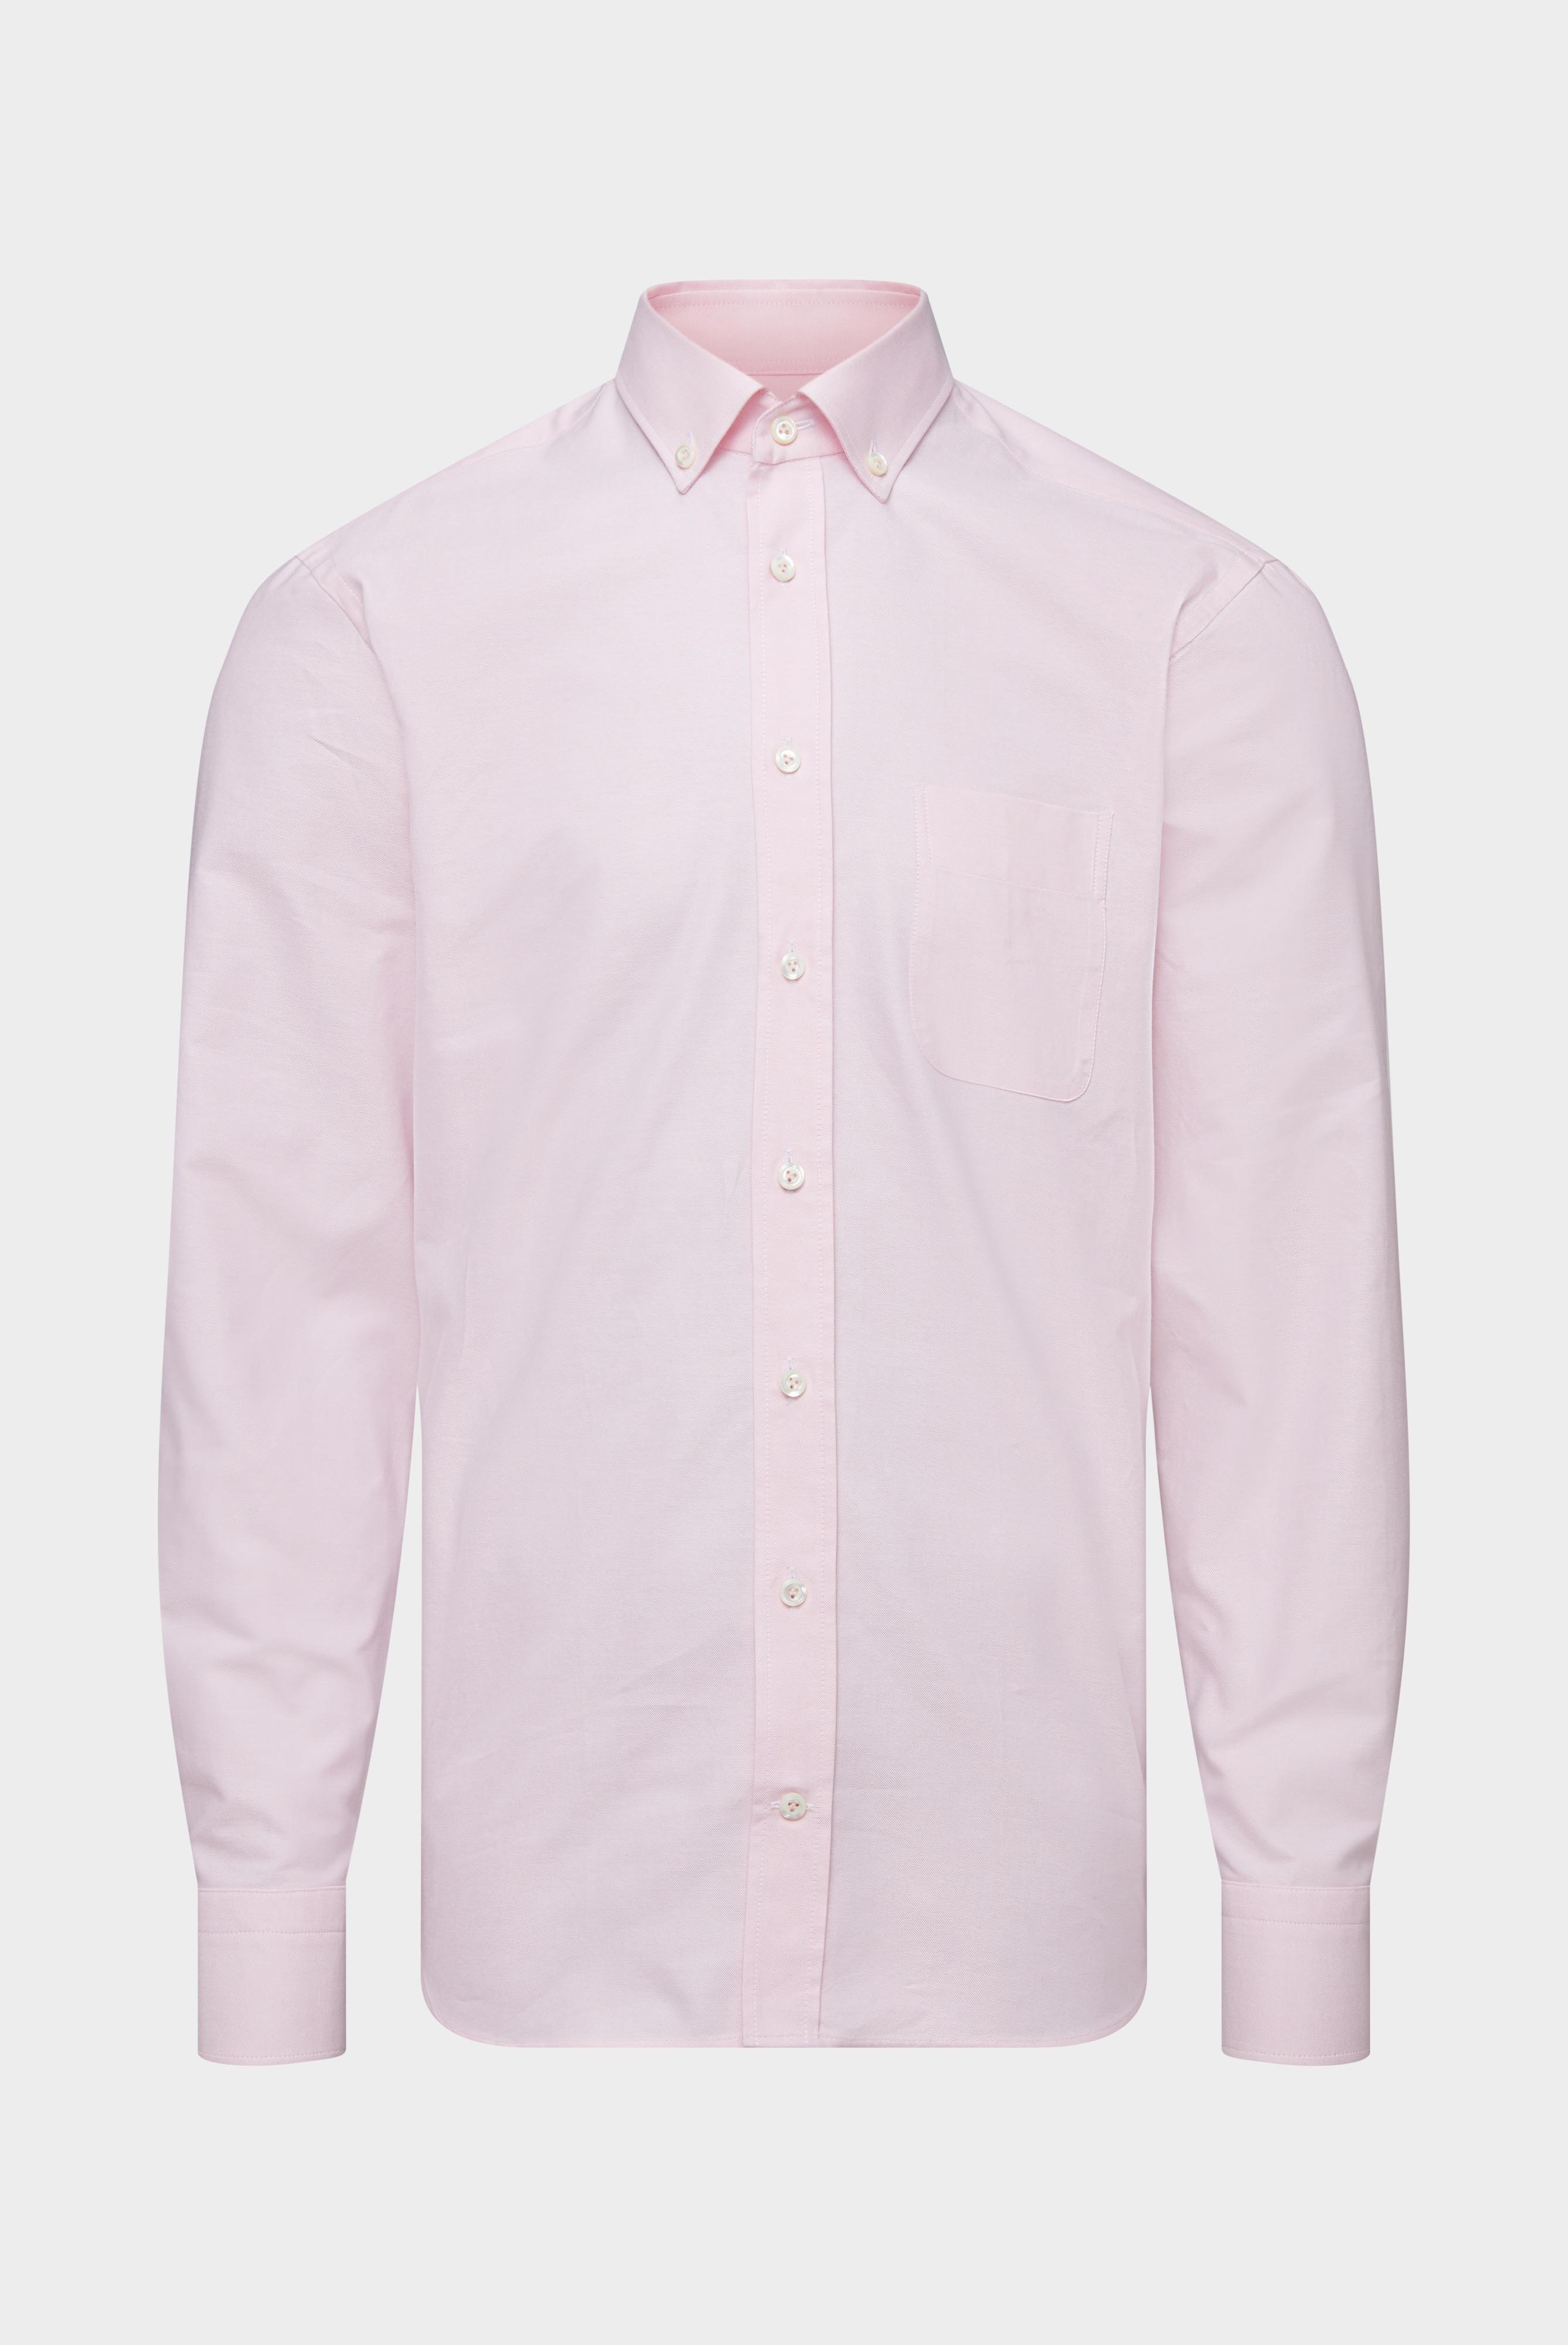 Casual Hemden+Oxfordhemd Tailor Fit+20.2013.AV.161267.530.37